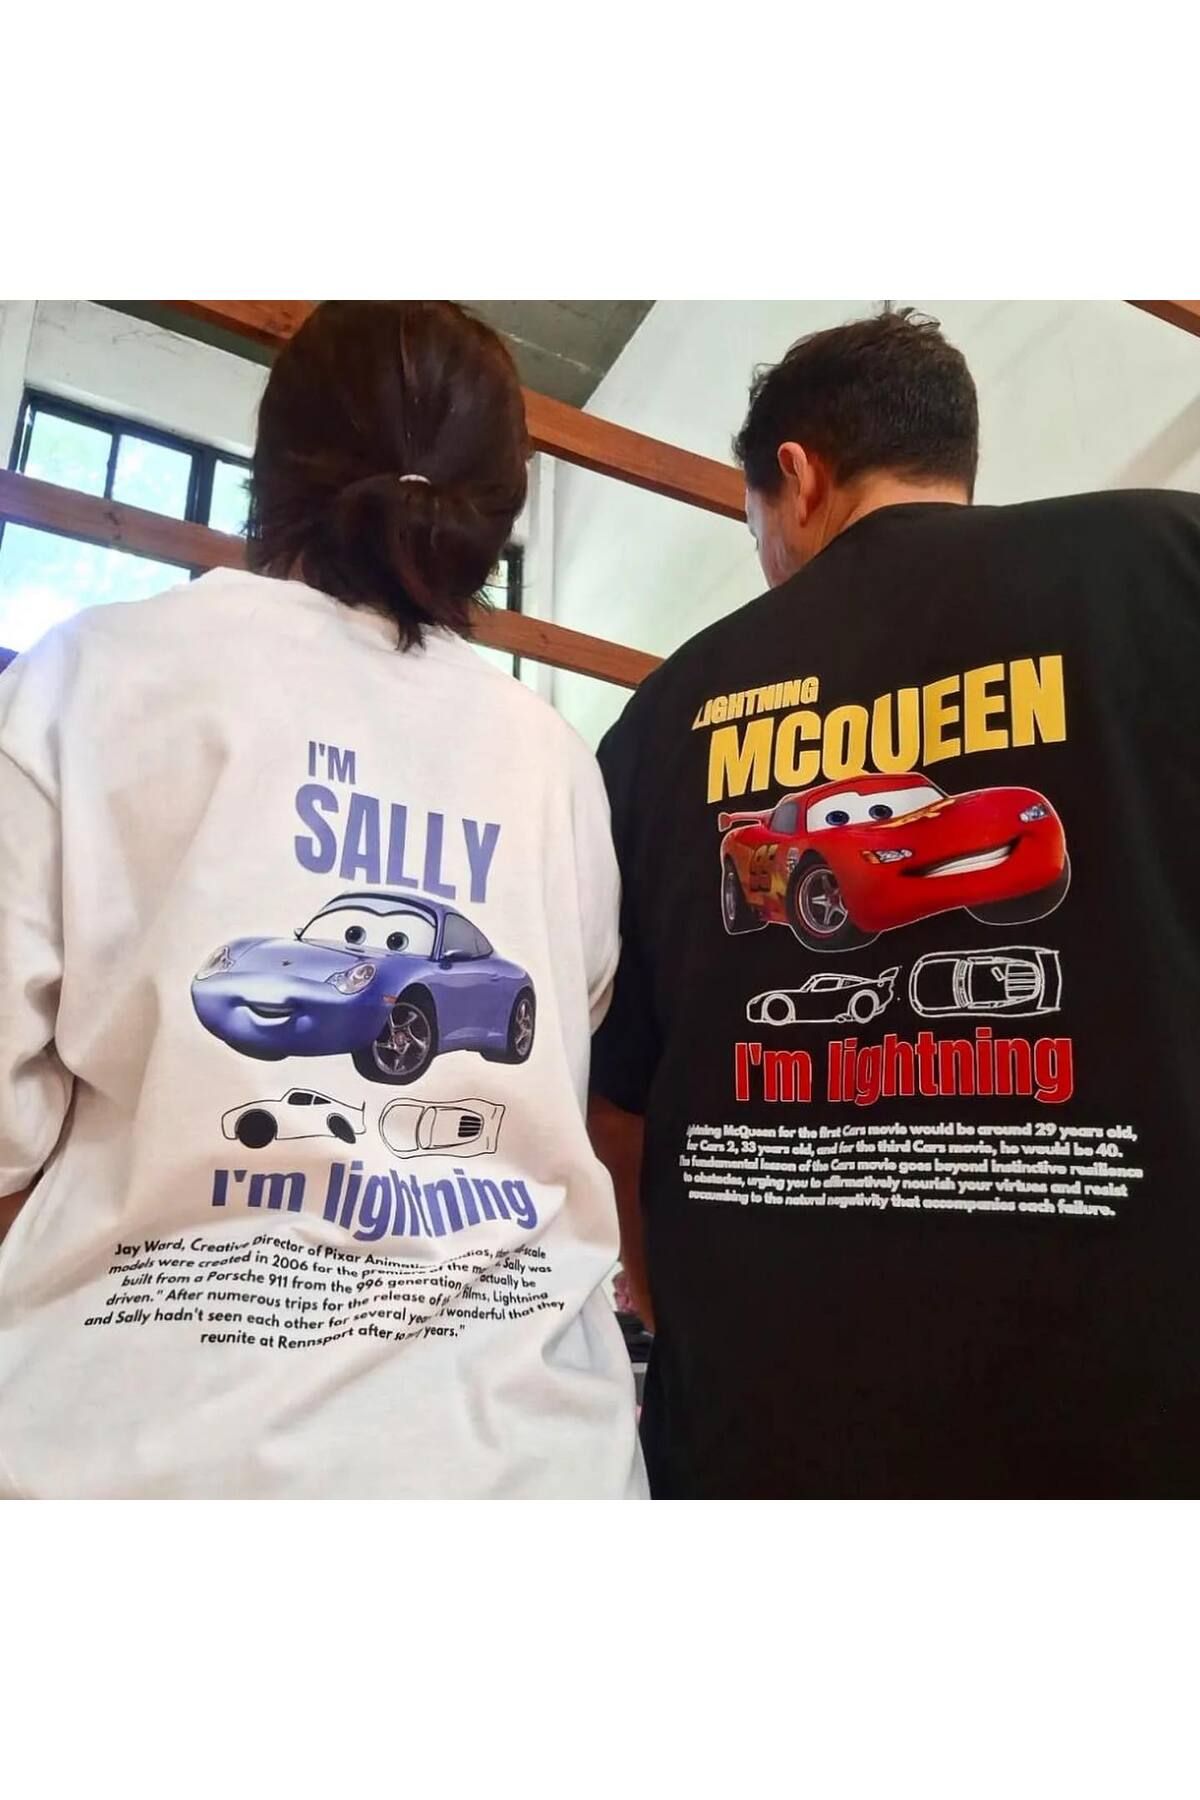 Köstebek Cars Lightning Mcqueen & Beyaz Cars I'm Sally - I'm Lightning Unisex T-shirt